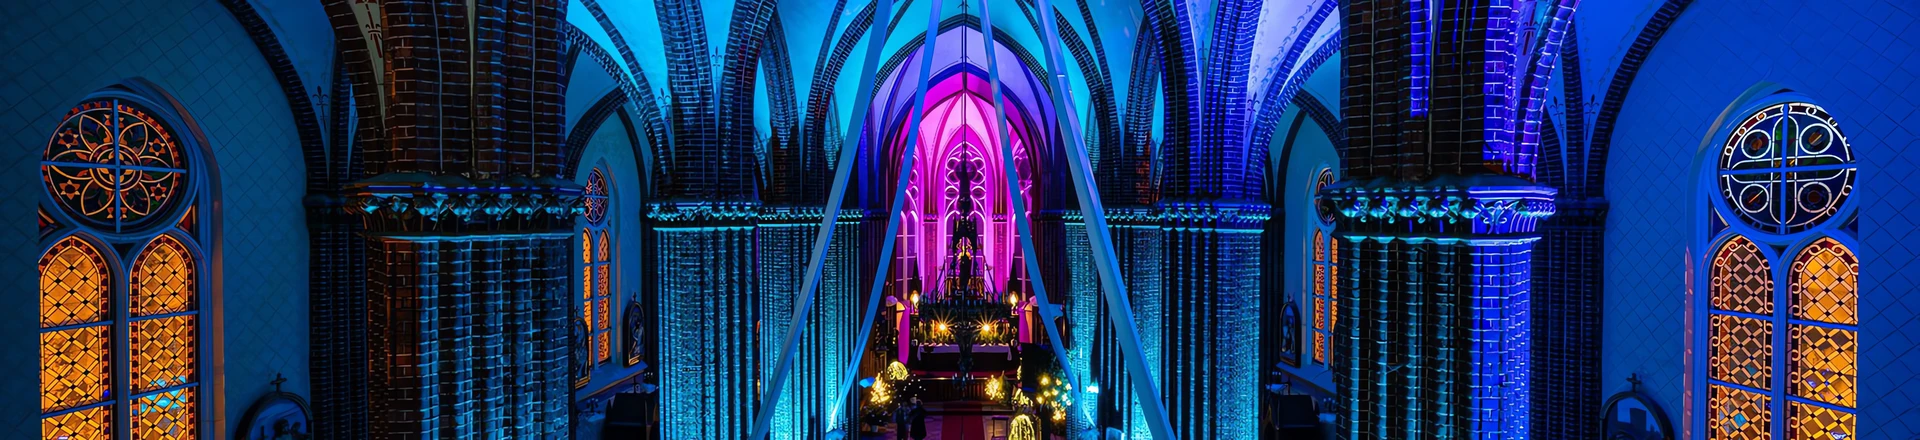 Ciekawe instalacje: Reflektory Cameo w roli oświetlenia w kościele